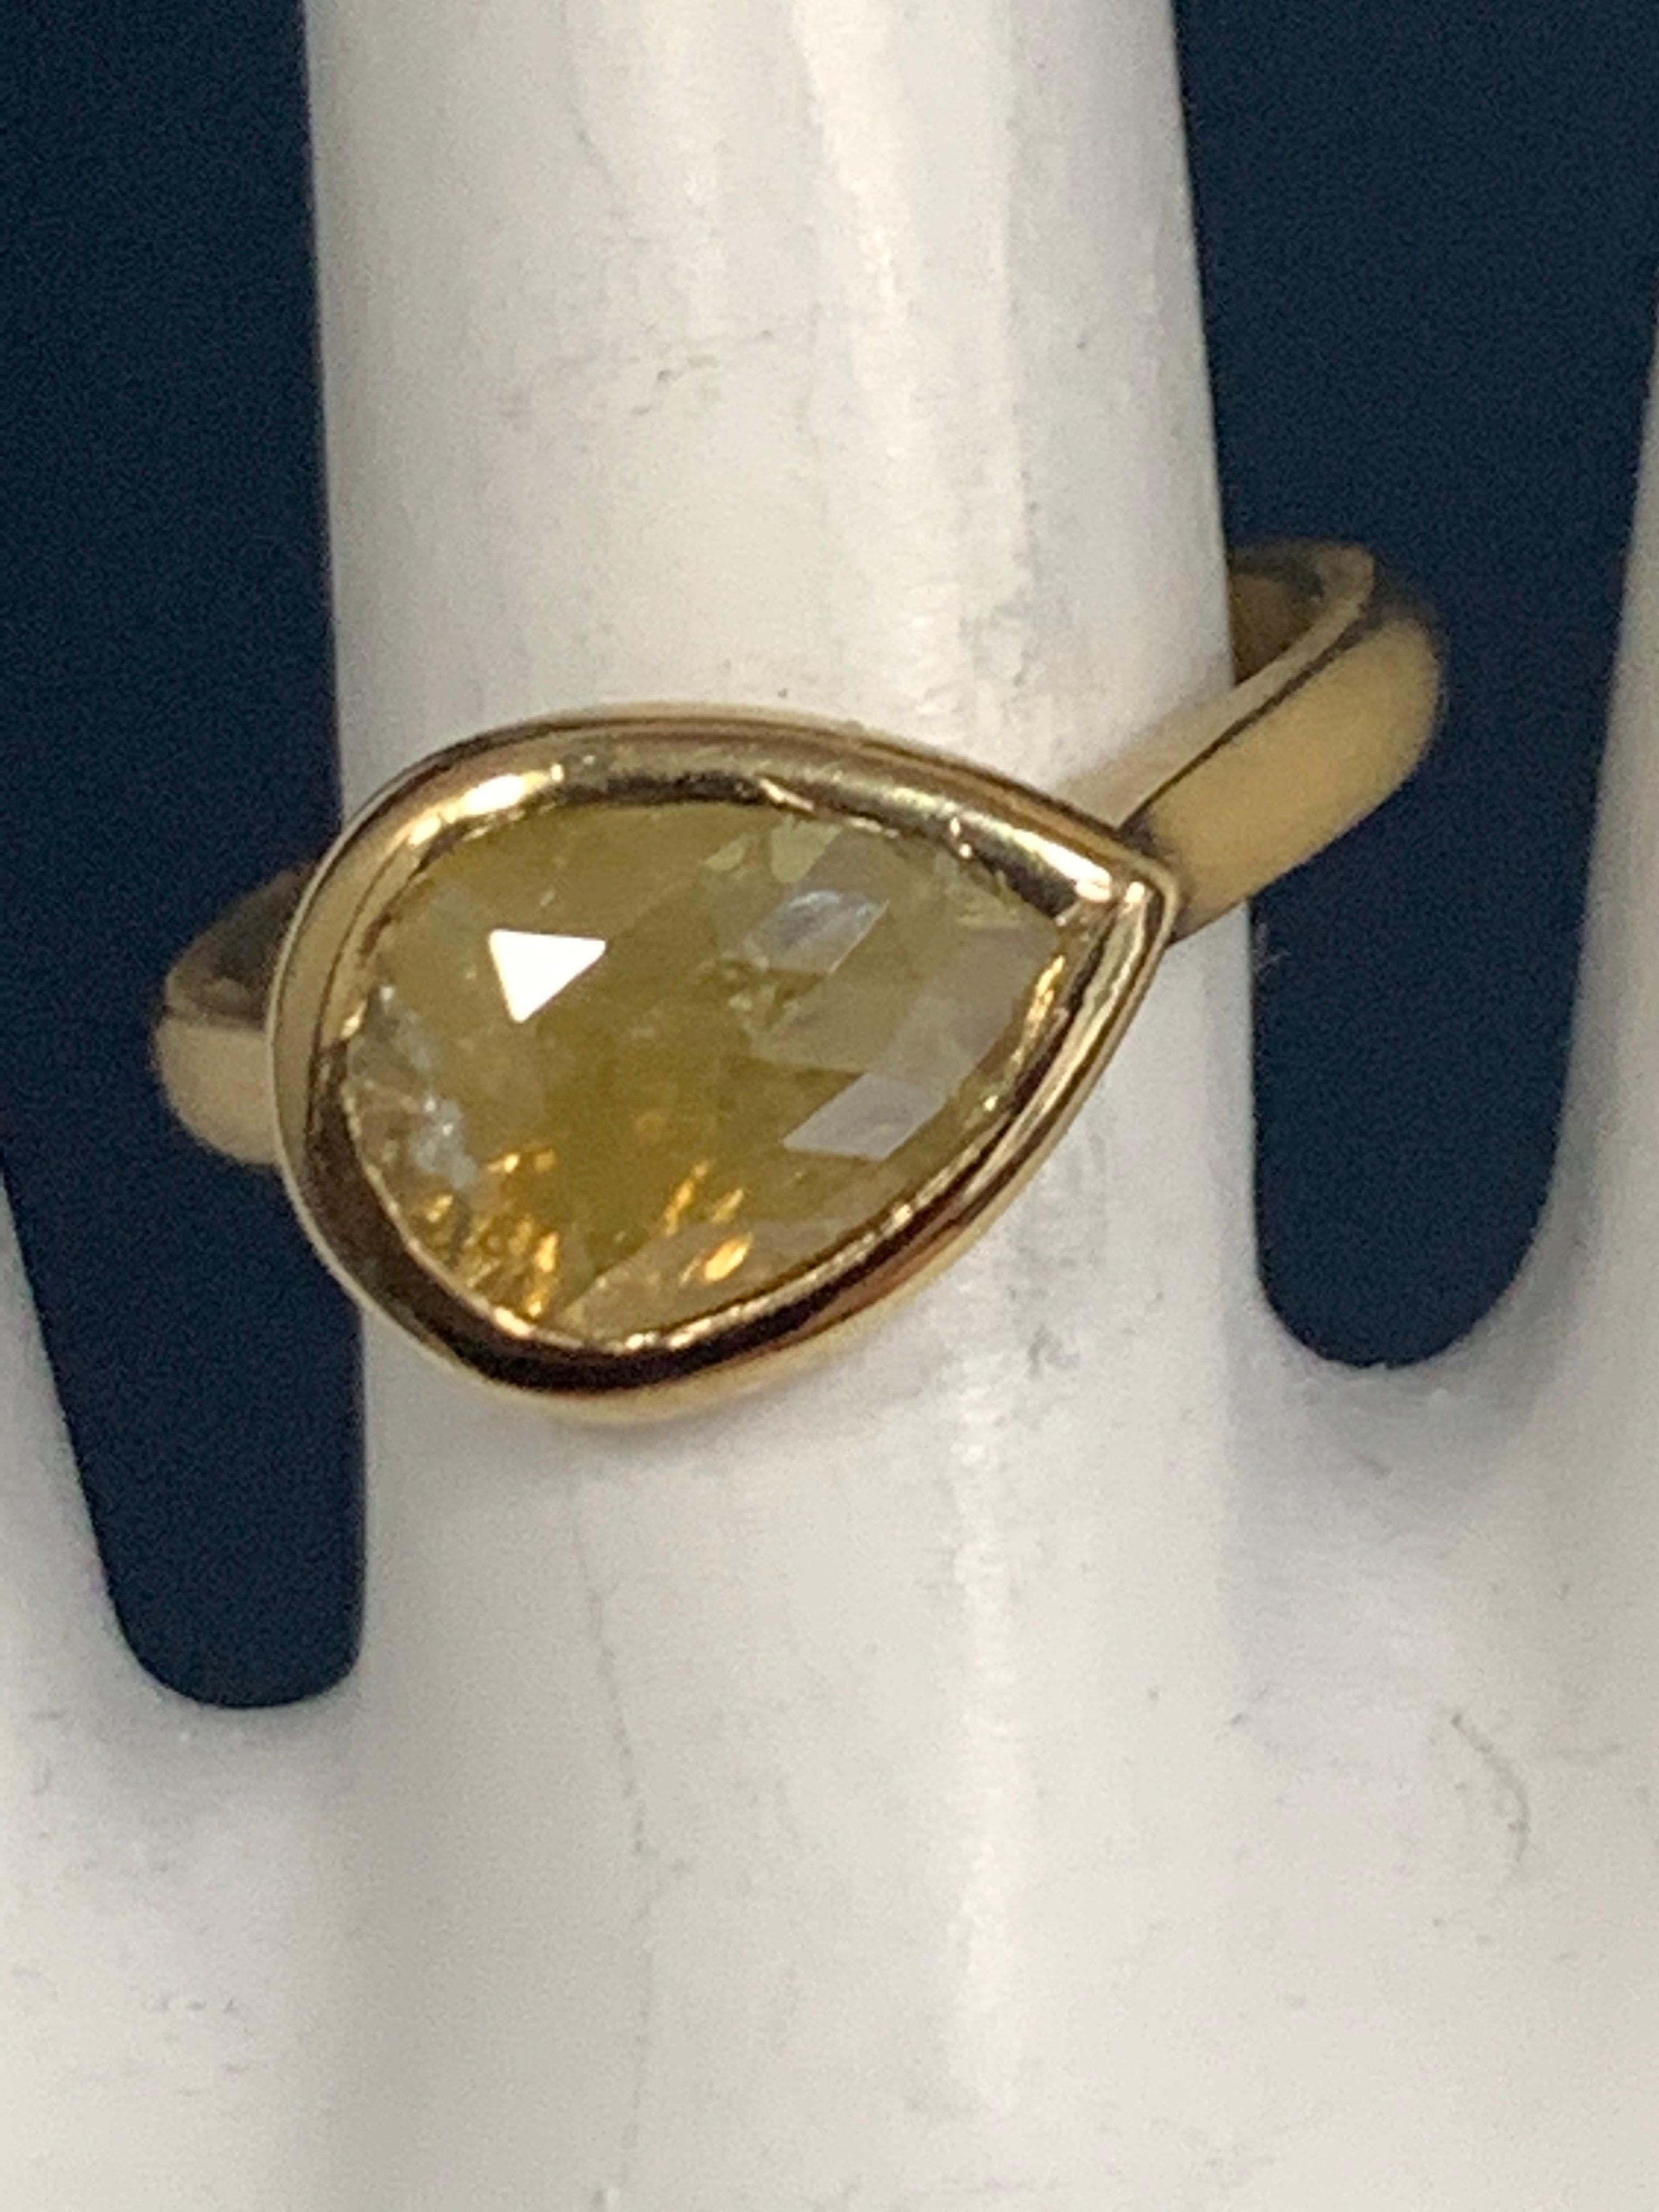 Eine atemberaubende 18k Gelbgold Cocktail-Ring (matt) mit einem 1,27 Karat birnenförmig Rose geschnitten natürlichen bräunlich gelben Diamanten messen etwa 12x8mm. 

Das Gewicht des Rings beträgt 4,5 Gramm, die Ringgröße ist 4,75. 